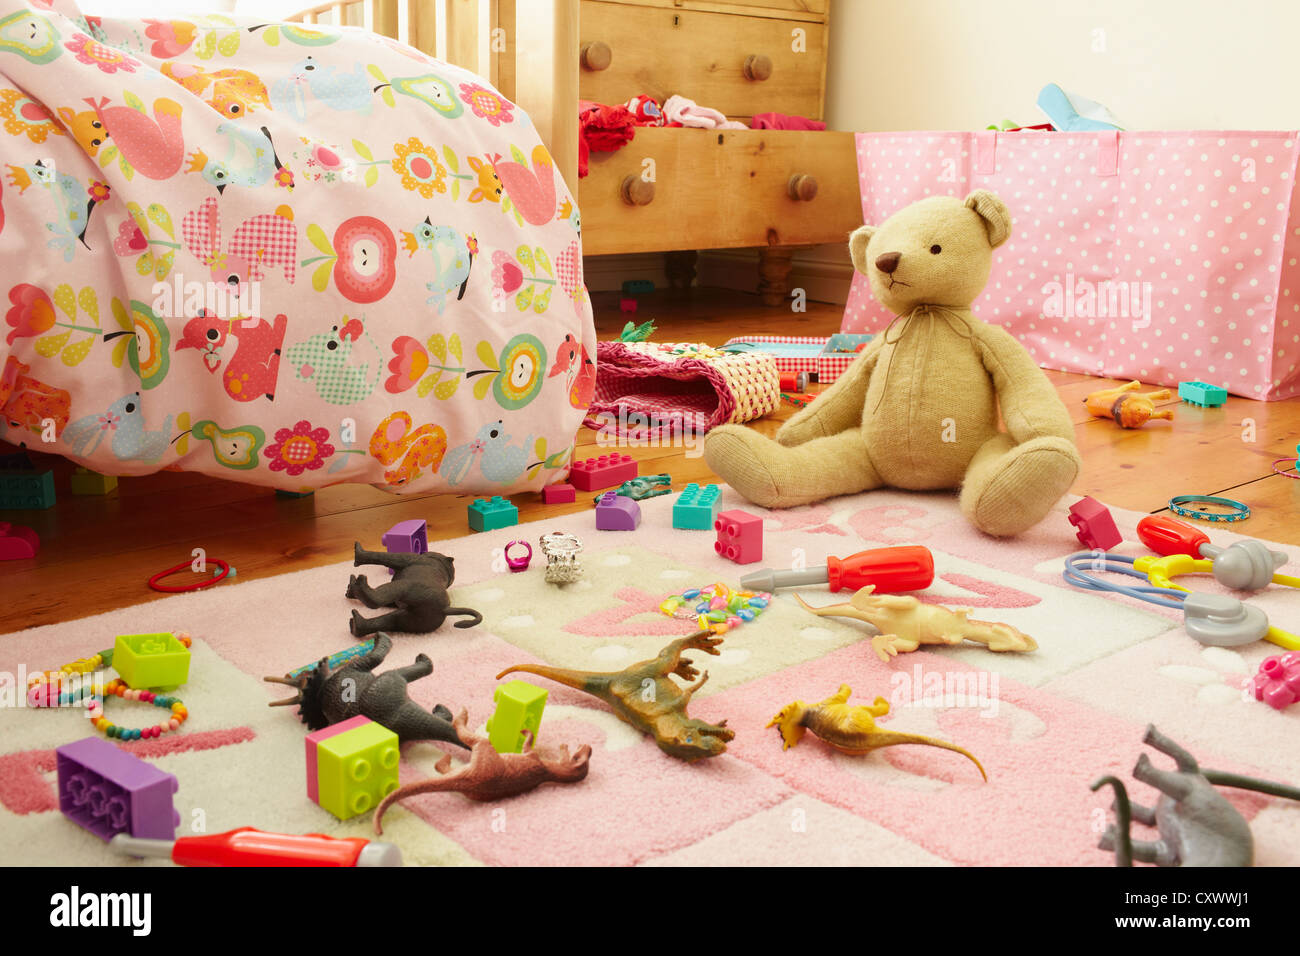 Bienes diversos Folleto Investigación Toys on floor of child's bedroom Stock Photo - Alamy